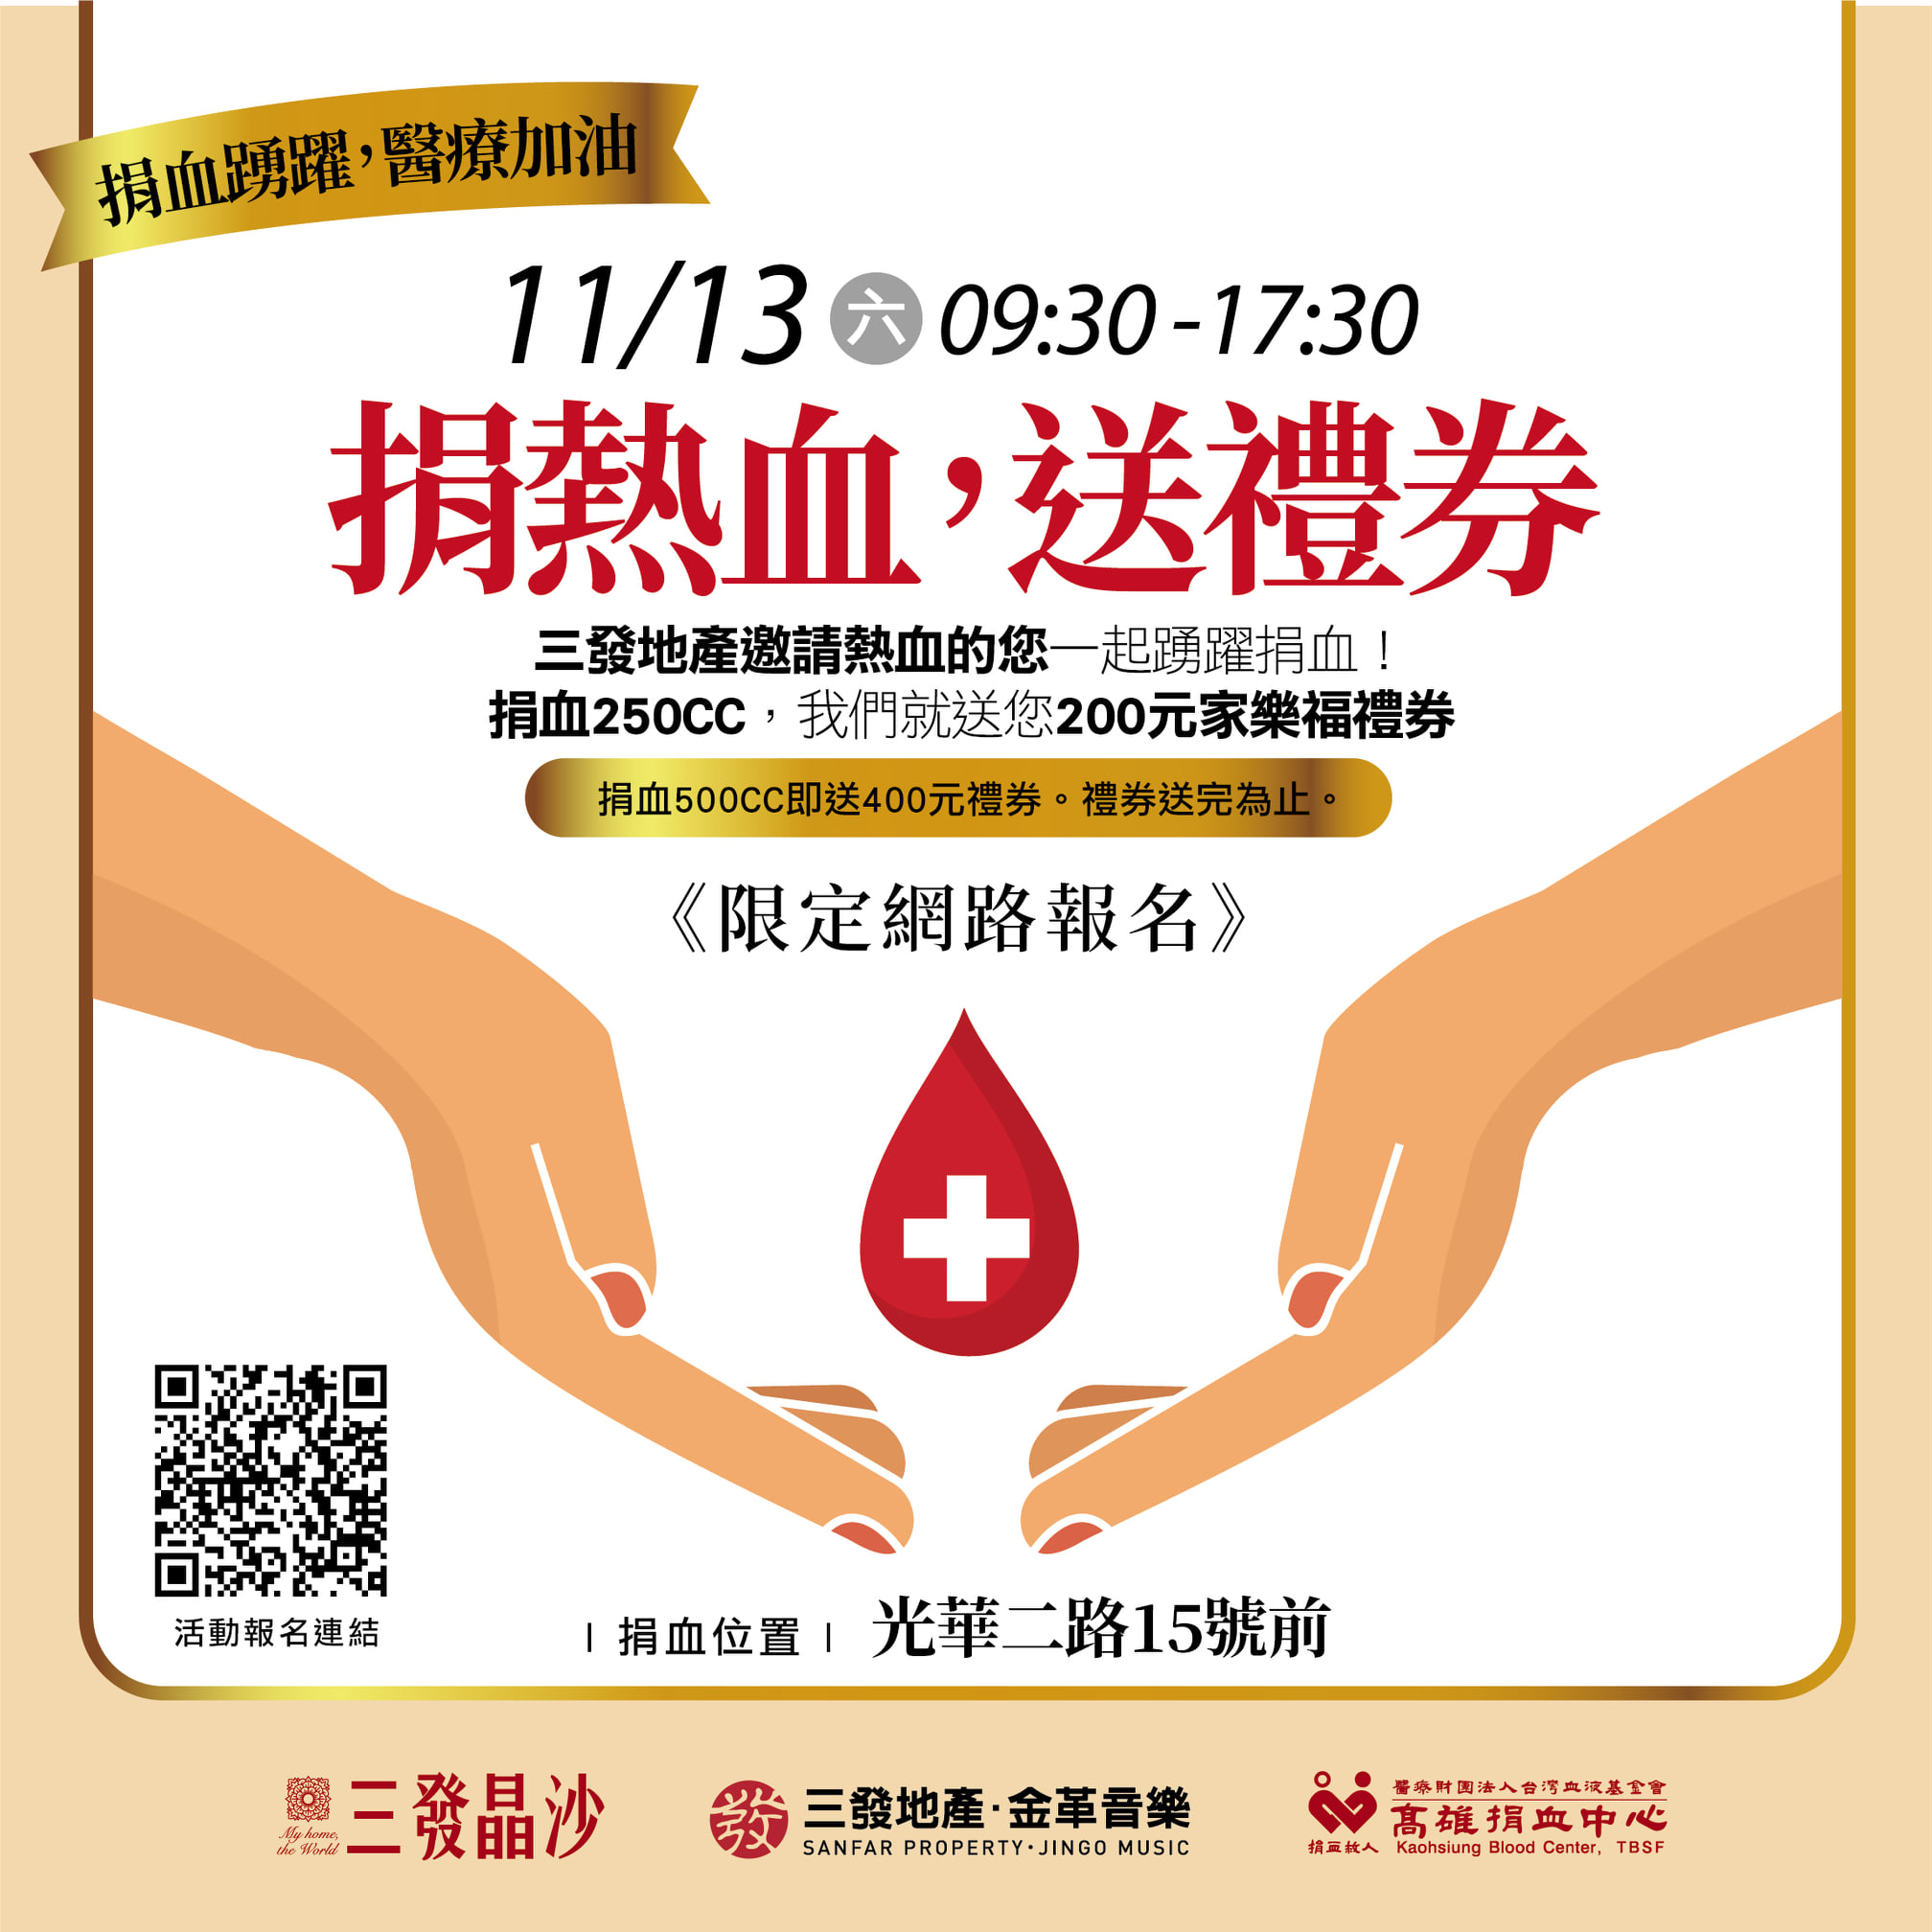 圖 (新增)11/08-14(一-日)捐血送禮券的場次